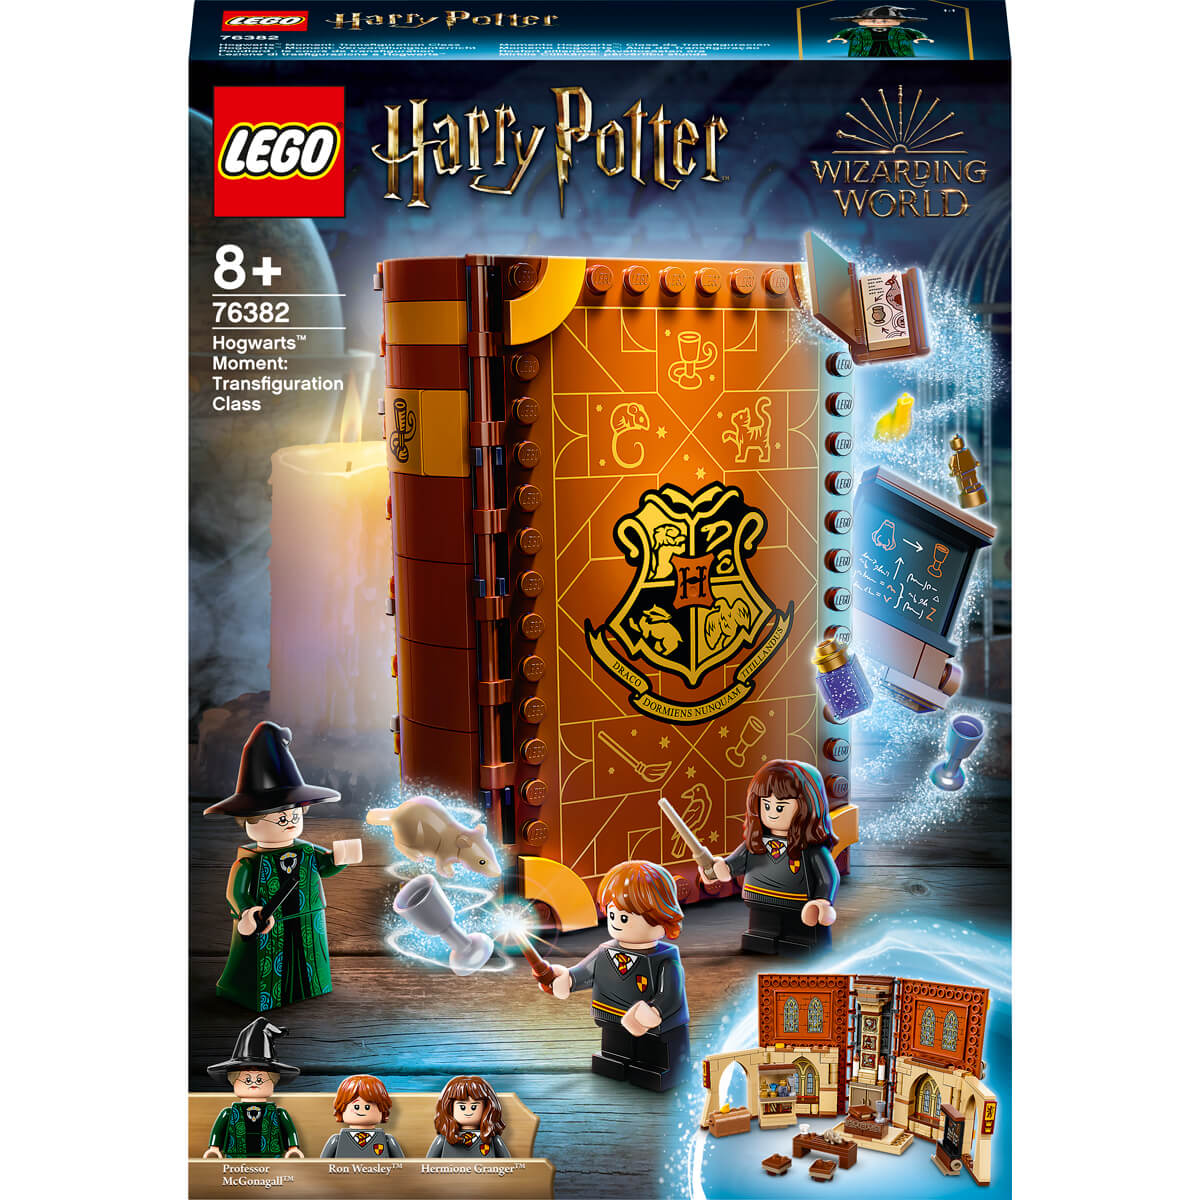 ΠΑΙΔΙ | Παιχνίδια | LEGO | HARRY POTER TM 76382 Hogwarts™ Moment: Transfiguration Class